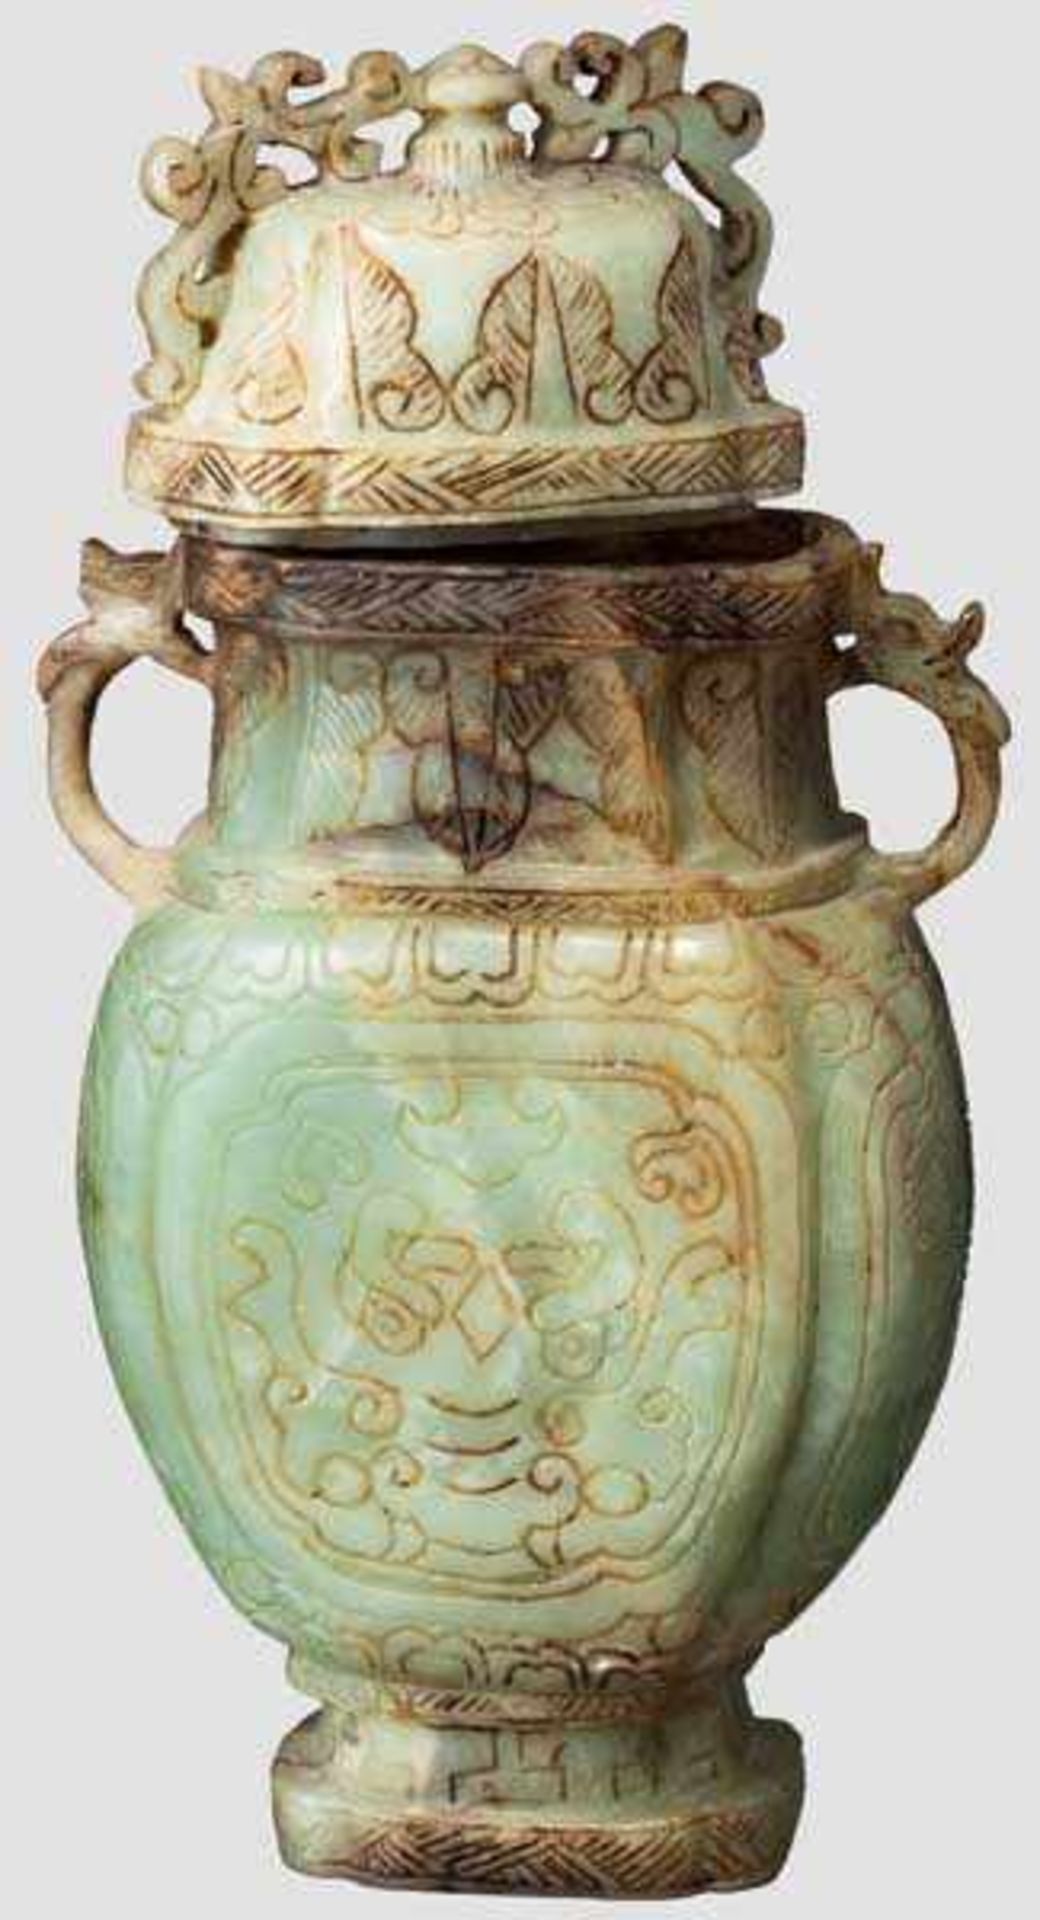 Große Vase aus Jade, China, späte Quing-Periode Einteilig geschnittene Vase aus graugrüner Jade - Bild 2 aus 3